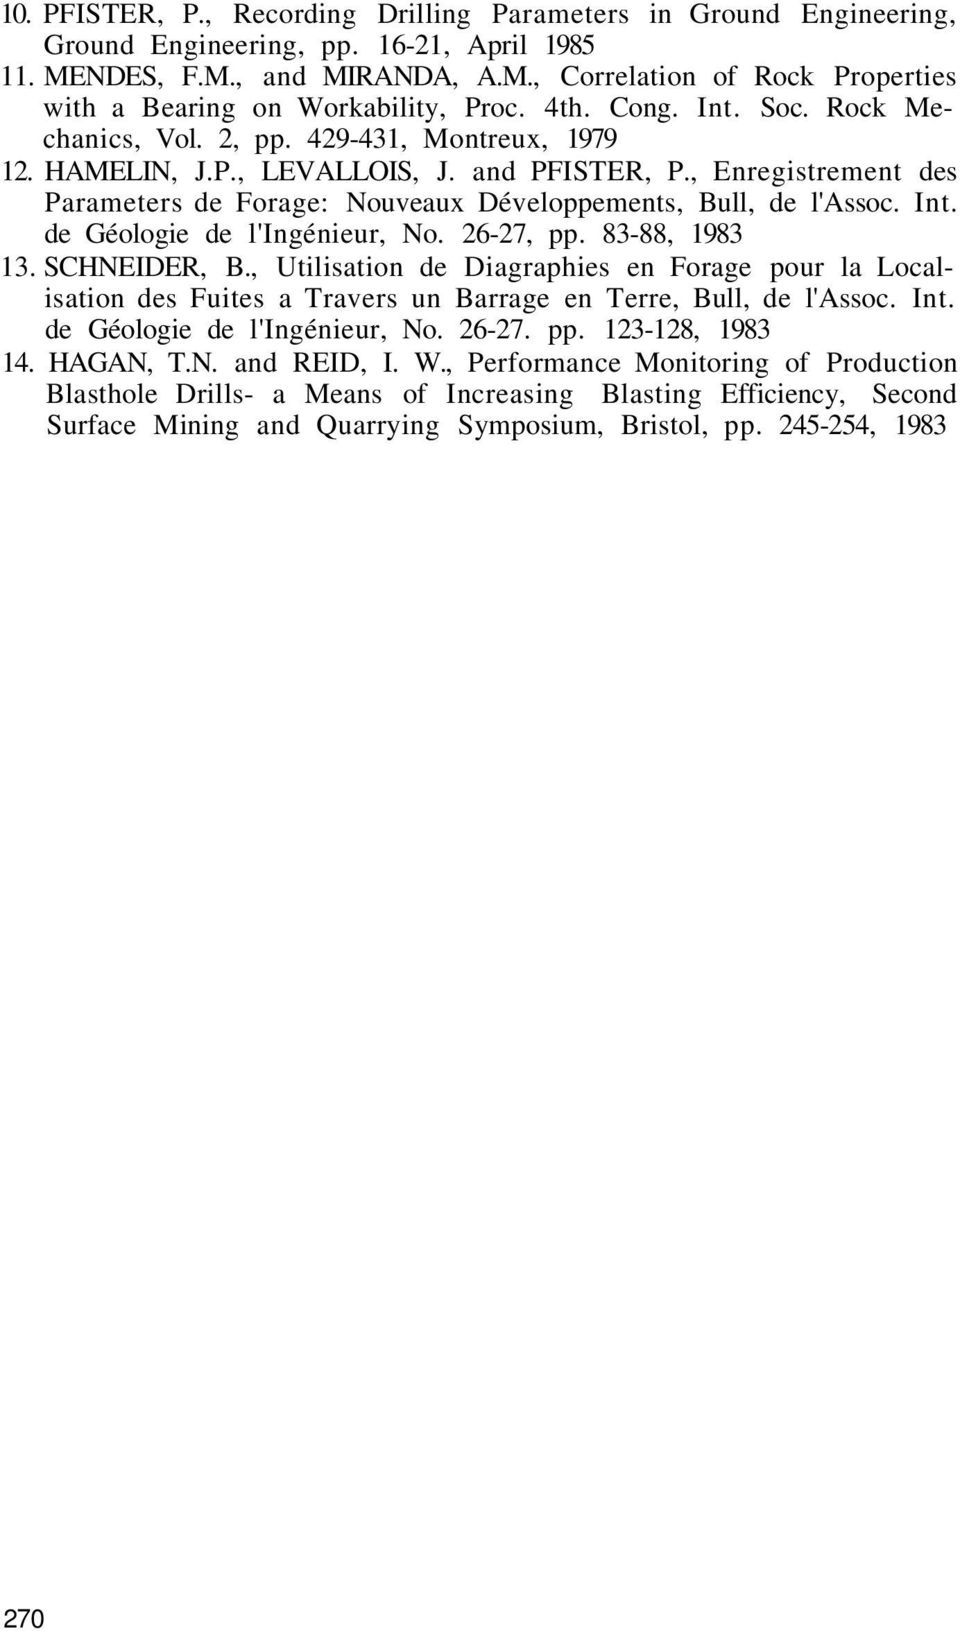 , Enregistrement des Parameters de Forage: Nouveaux Développements, Bull, de l'assoc. Int. de Géologie de l'ingénieur, No. 26-27, pp. 83-88, 1983 13. SCHNEIDER, B.